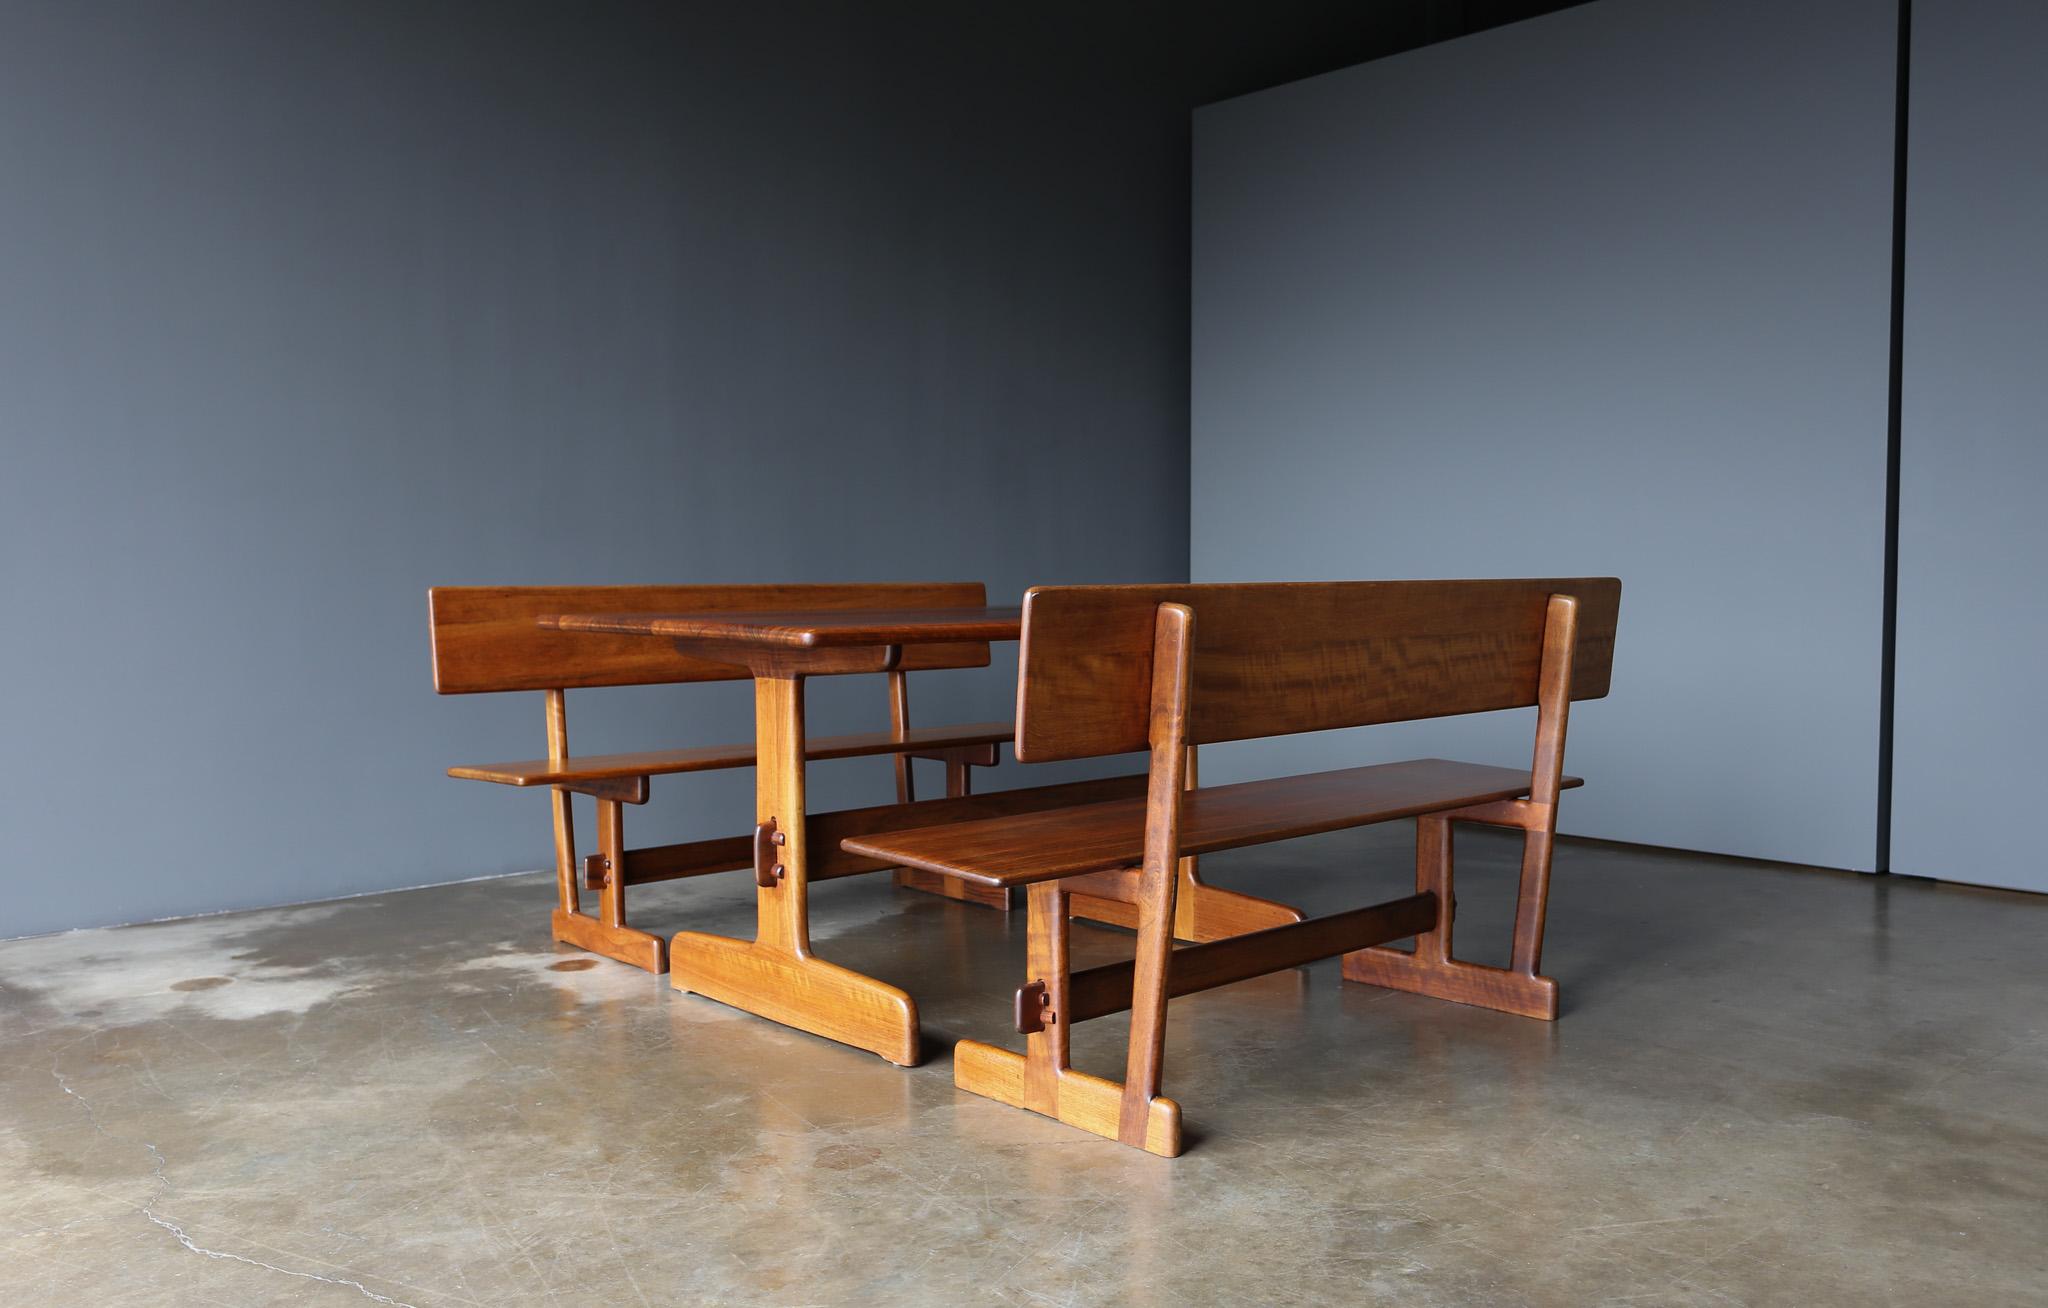 Gerald McCabe Shedua Trestle Dining Table & Benches für Orange Crate Modern.  Santa Monica, Kalifornien, um 1980.  
Makers markieren den letzten Platz in der Tabelle.  Eine Bank ist auf der Unterseite handsigniert.  Schöne Shedua-Holzmaserung im